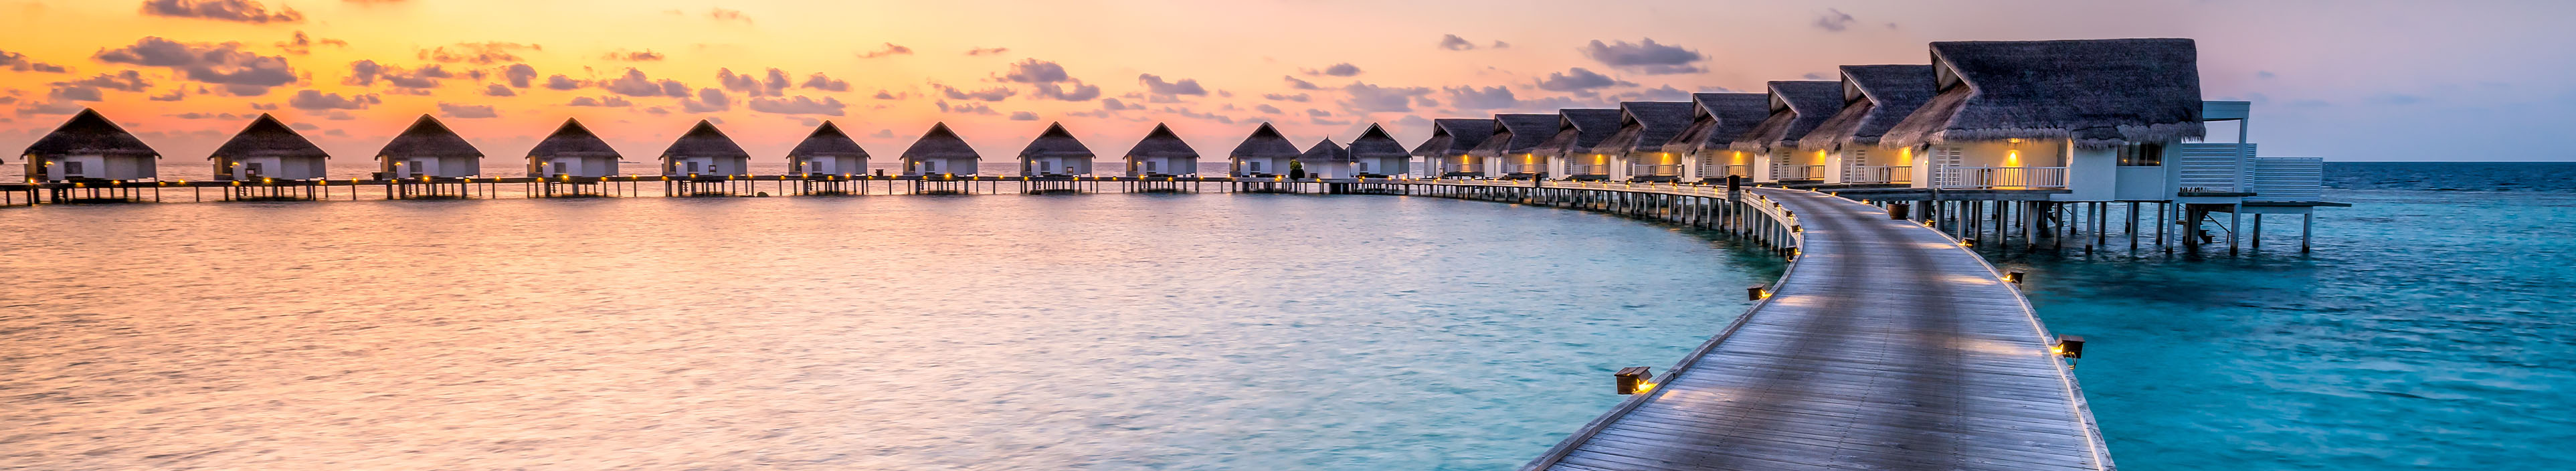 Hotel auf den Malediven mit Wasservillas.